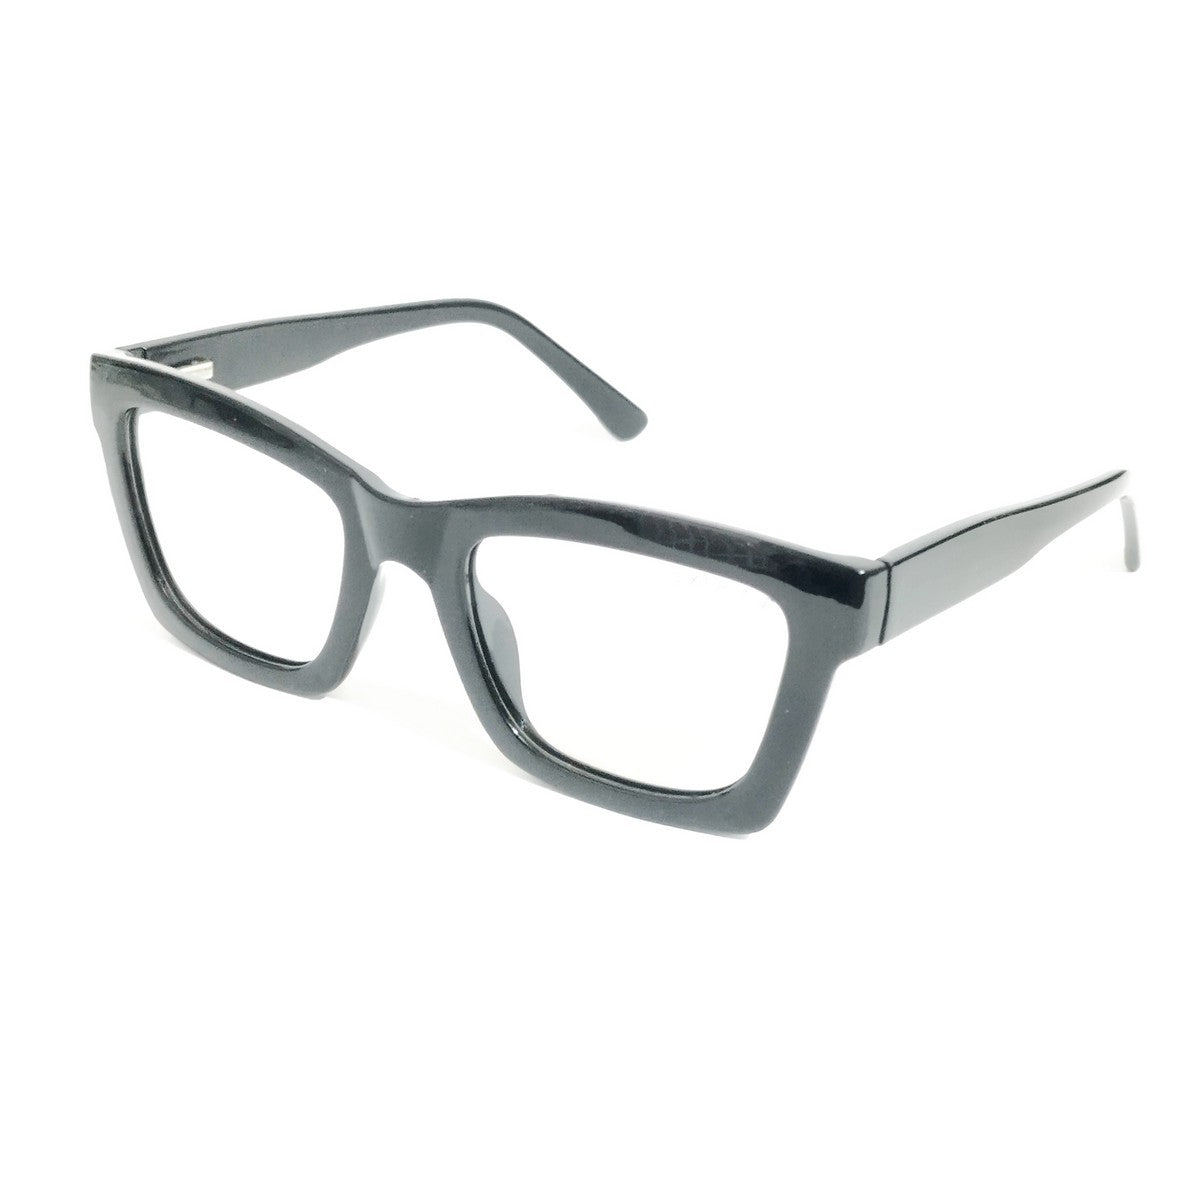 Celebrity Style Black Glasses for Men and Women Eyeglasses